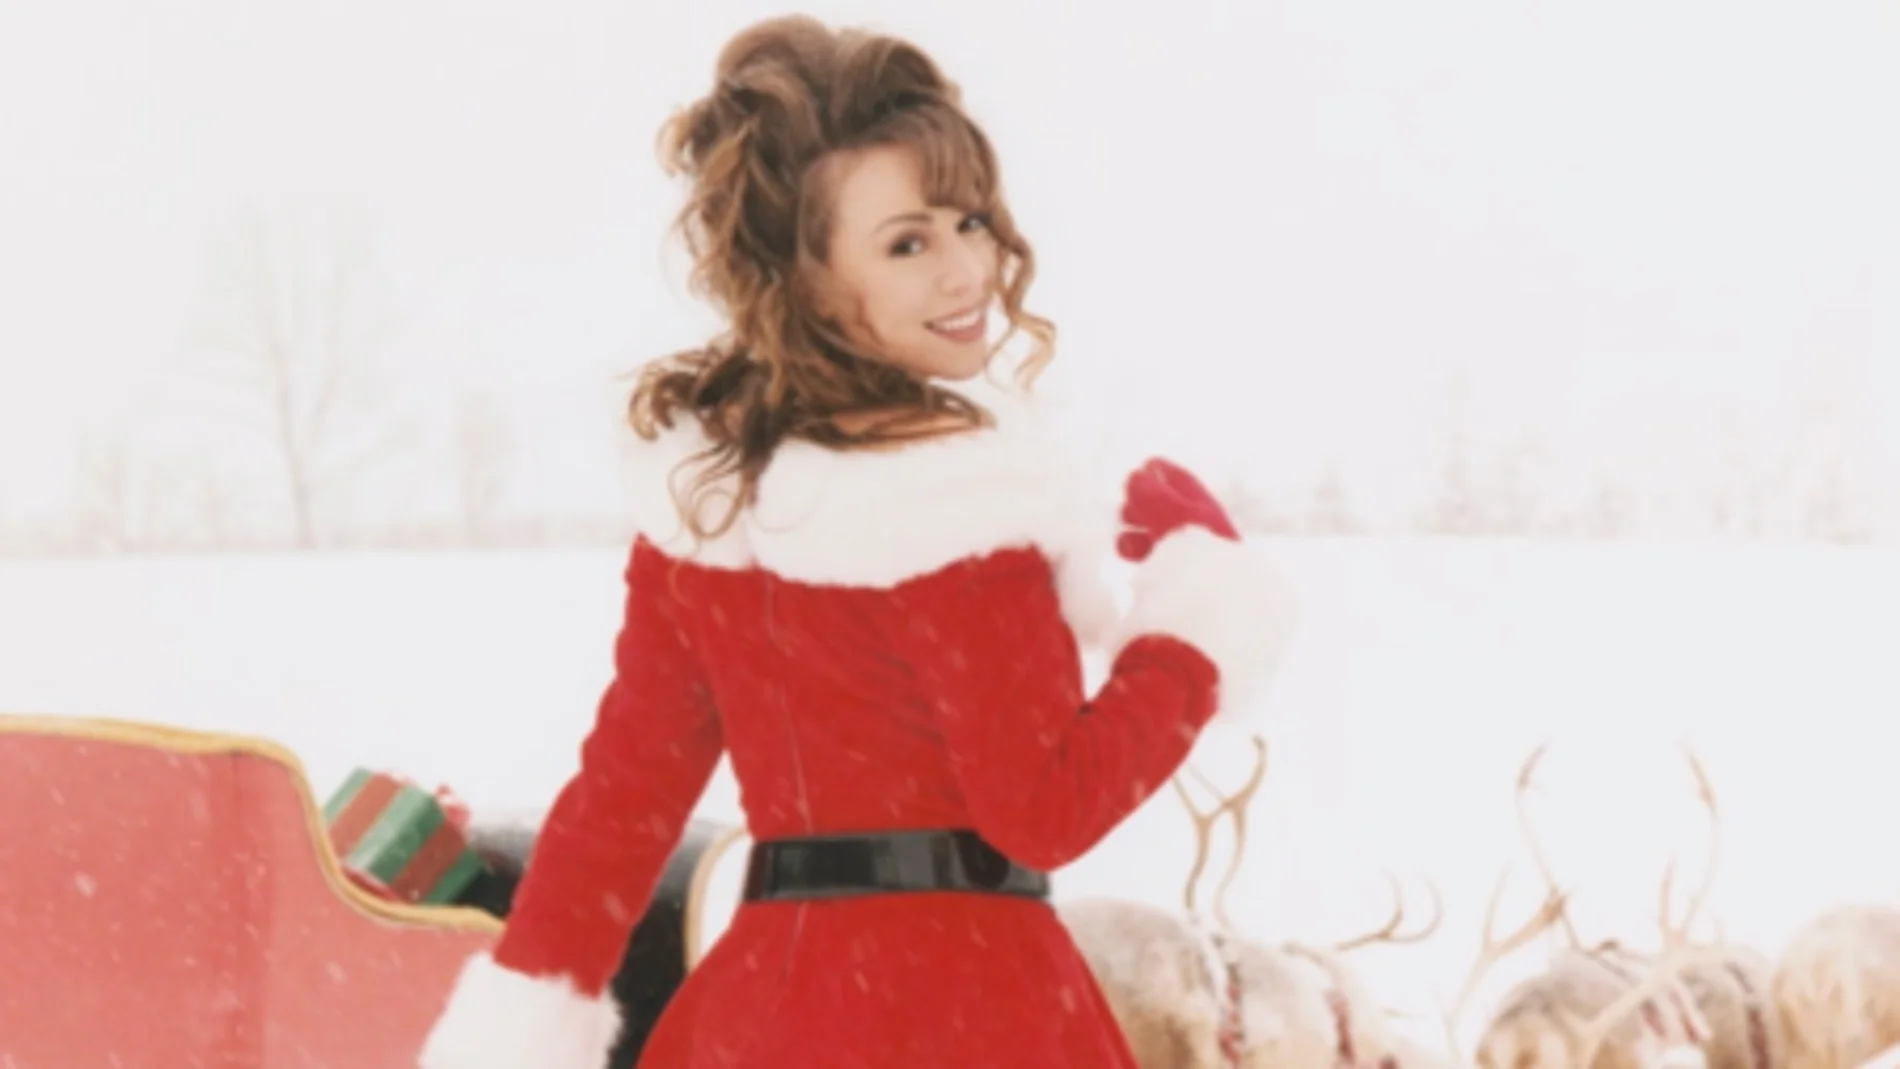 Las otras versiones de 'All I Want for Christmas': Auryn, Justin Bieber, Ariana Grande...